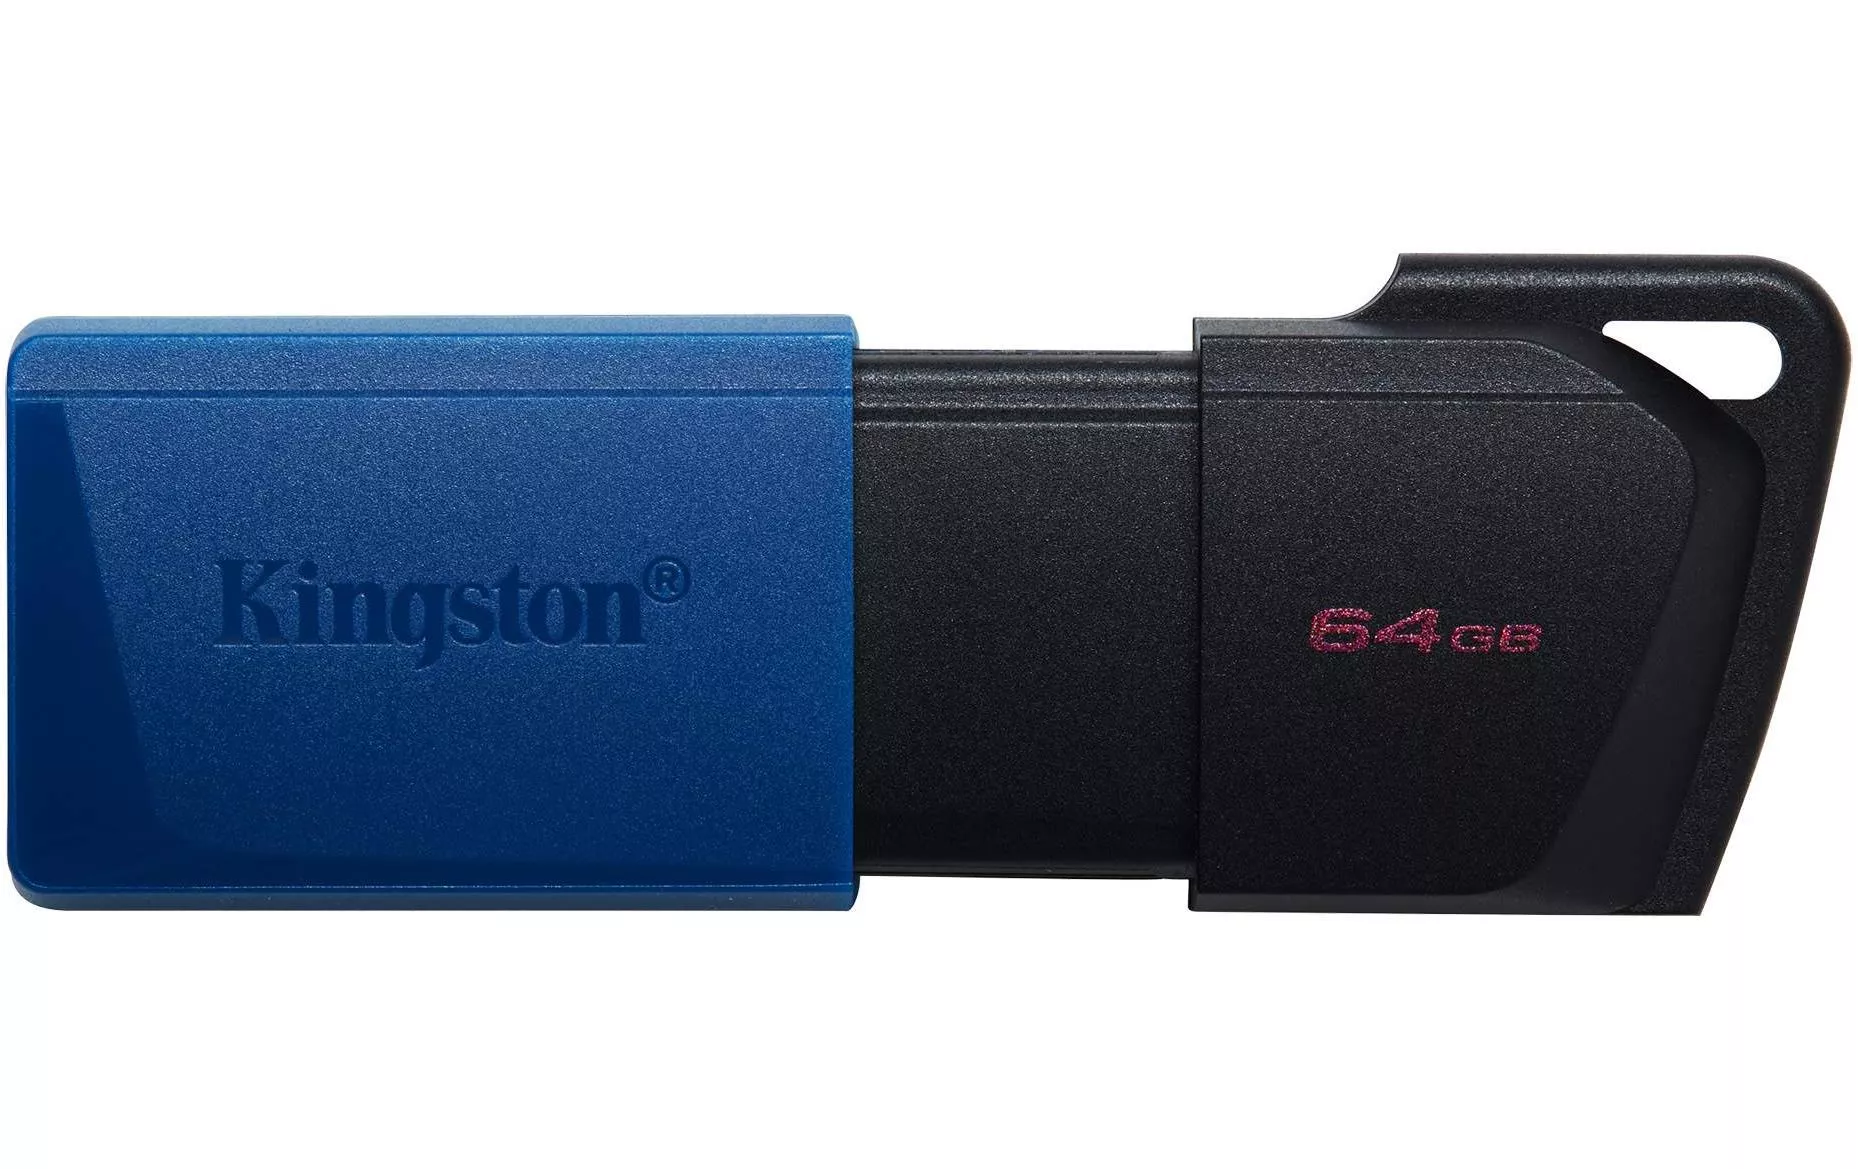 Kingston dtx 64gb. Kingston DTXM. Kingston Exodia 32gb USB. Kingston DATATRAVELER Exodia 32gb. USB-флешка Kingston DATATRAVELER Exodia m 32gb Black/Black (DTXM/32gb).